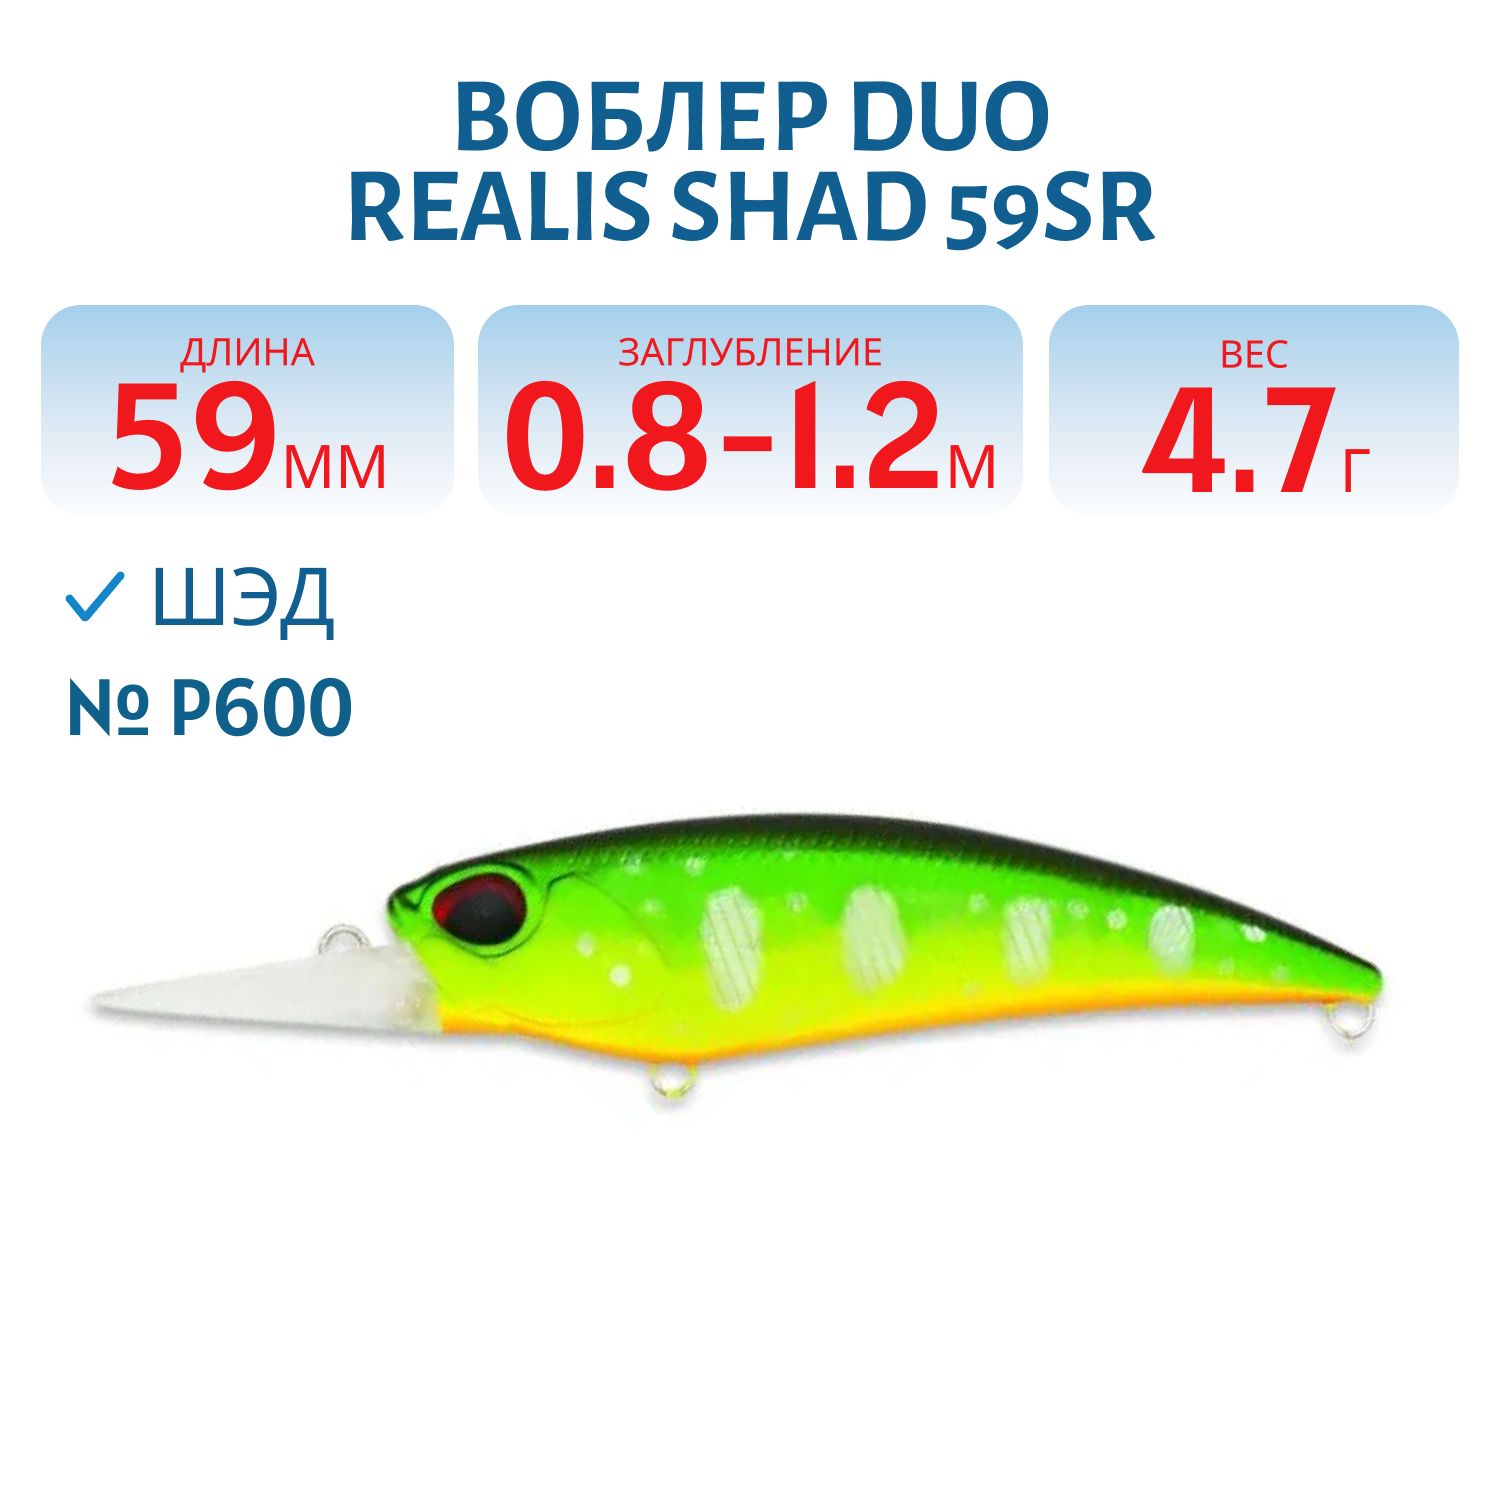 Воблер DUO Realis Shad 59SR,  59 мм.,  4.7 гр. (DUO-RSD-59SR-P600)